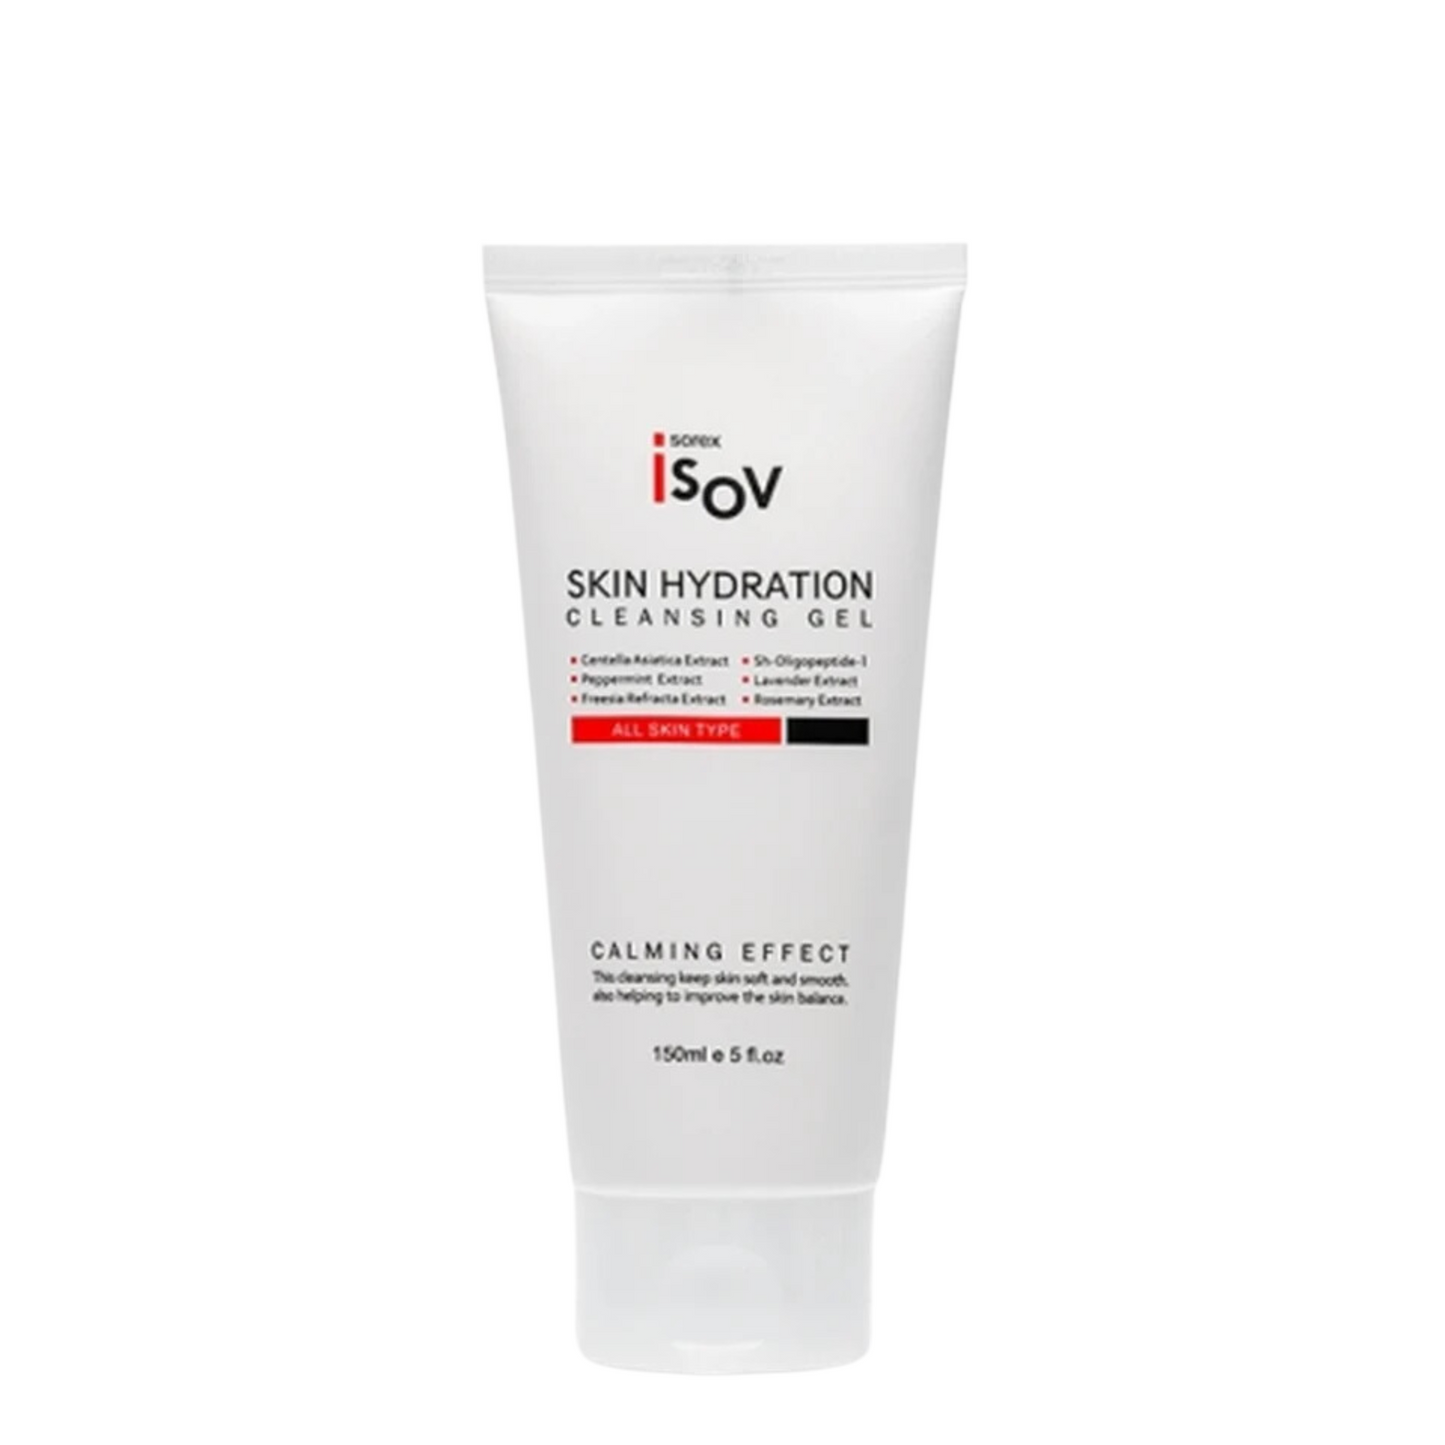 ISOV Skin Hydration Cleansing Gel